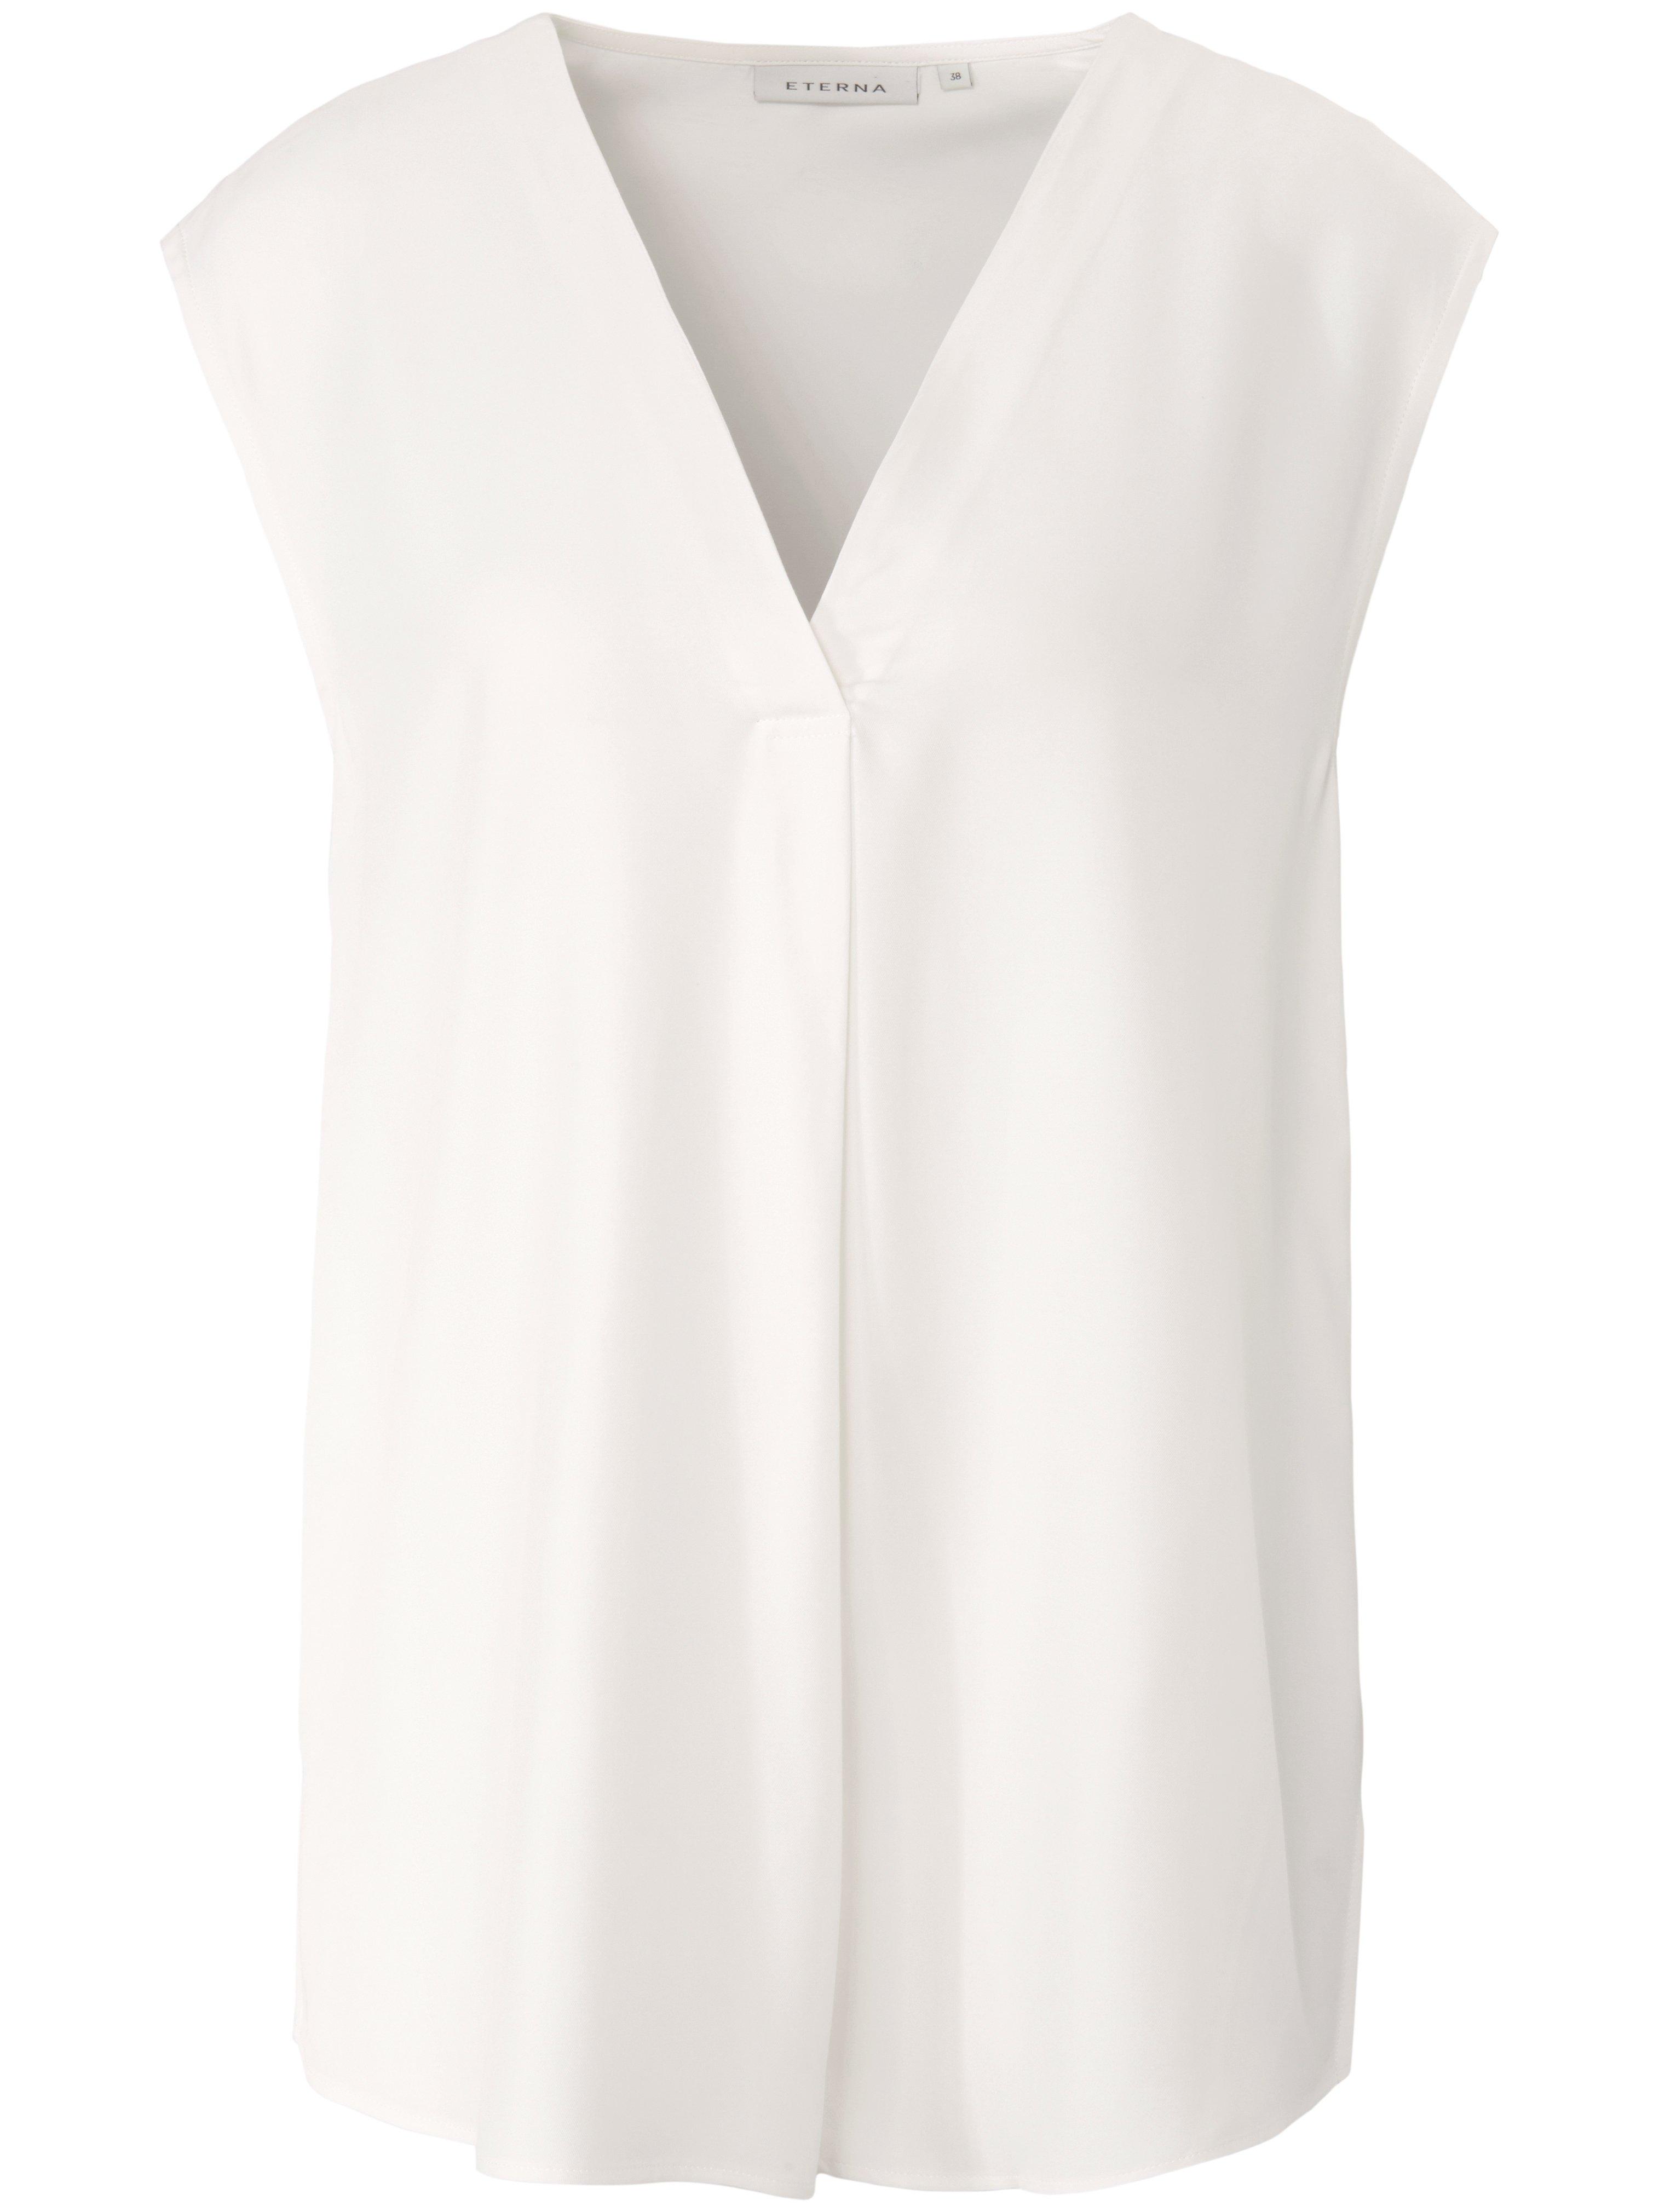 Mouwloze blouse V-hals Van Eterna wit Top Merken Winkel